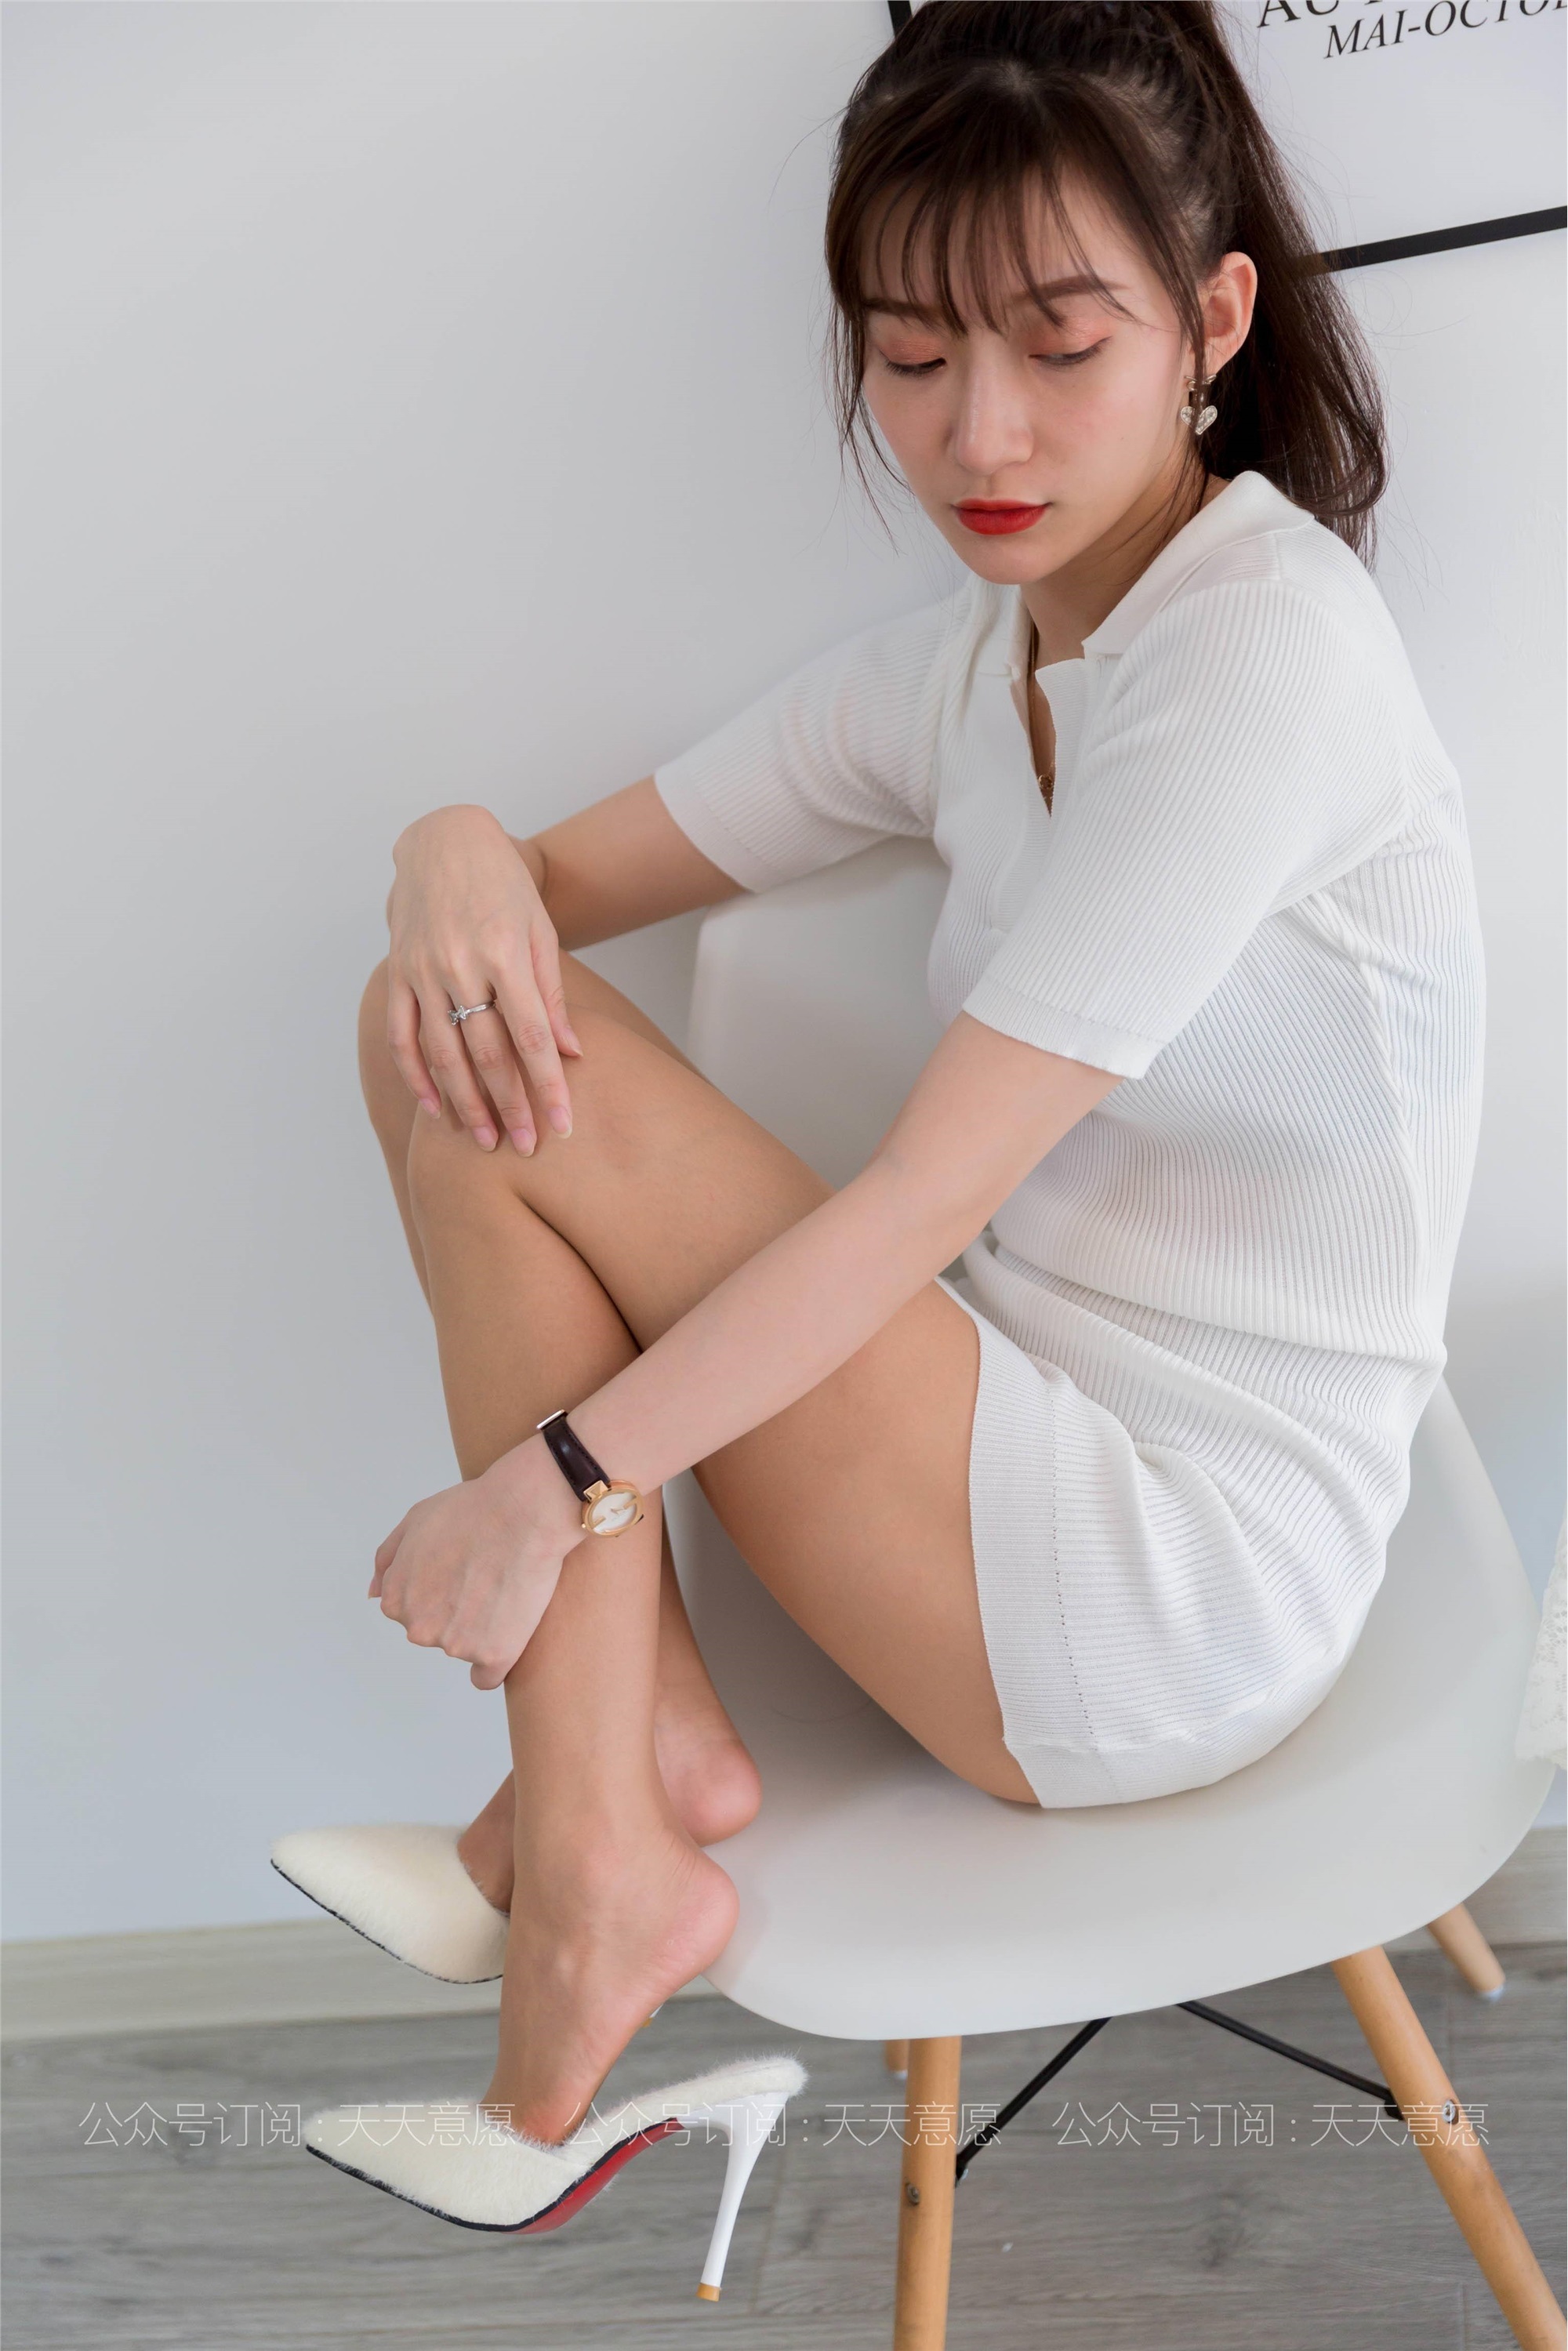 Model: Qiu Qiu pure Desire Short Skirt